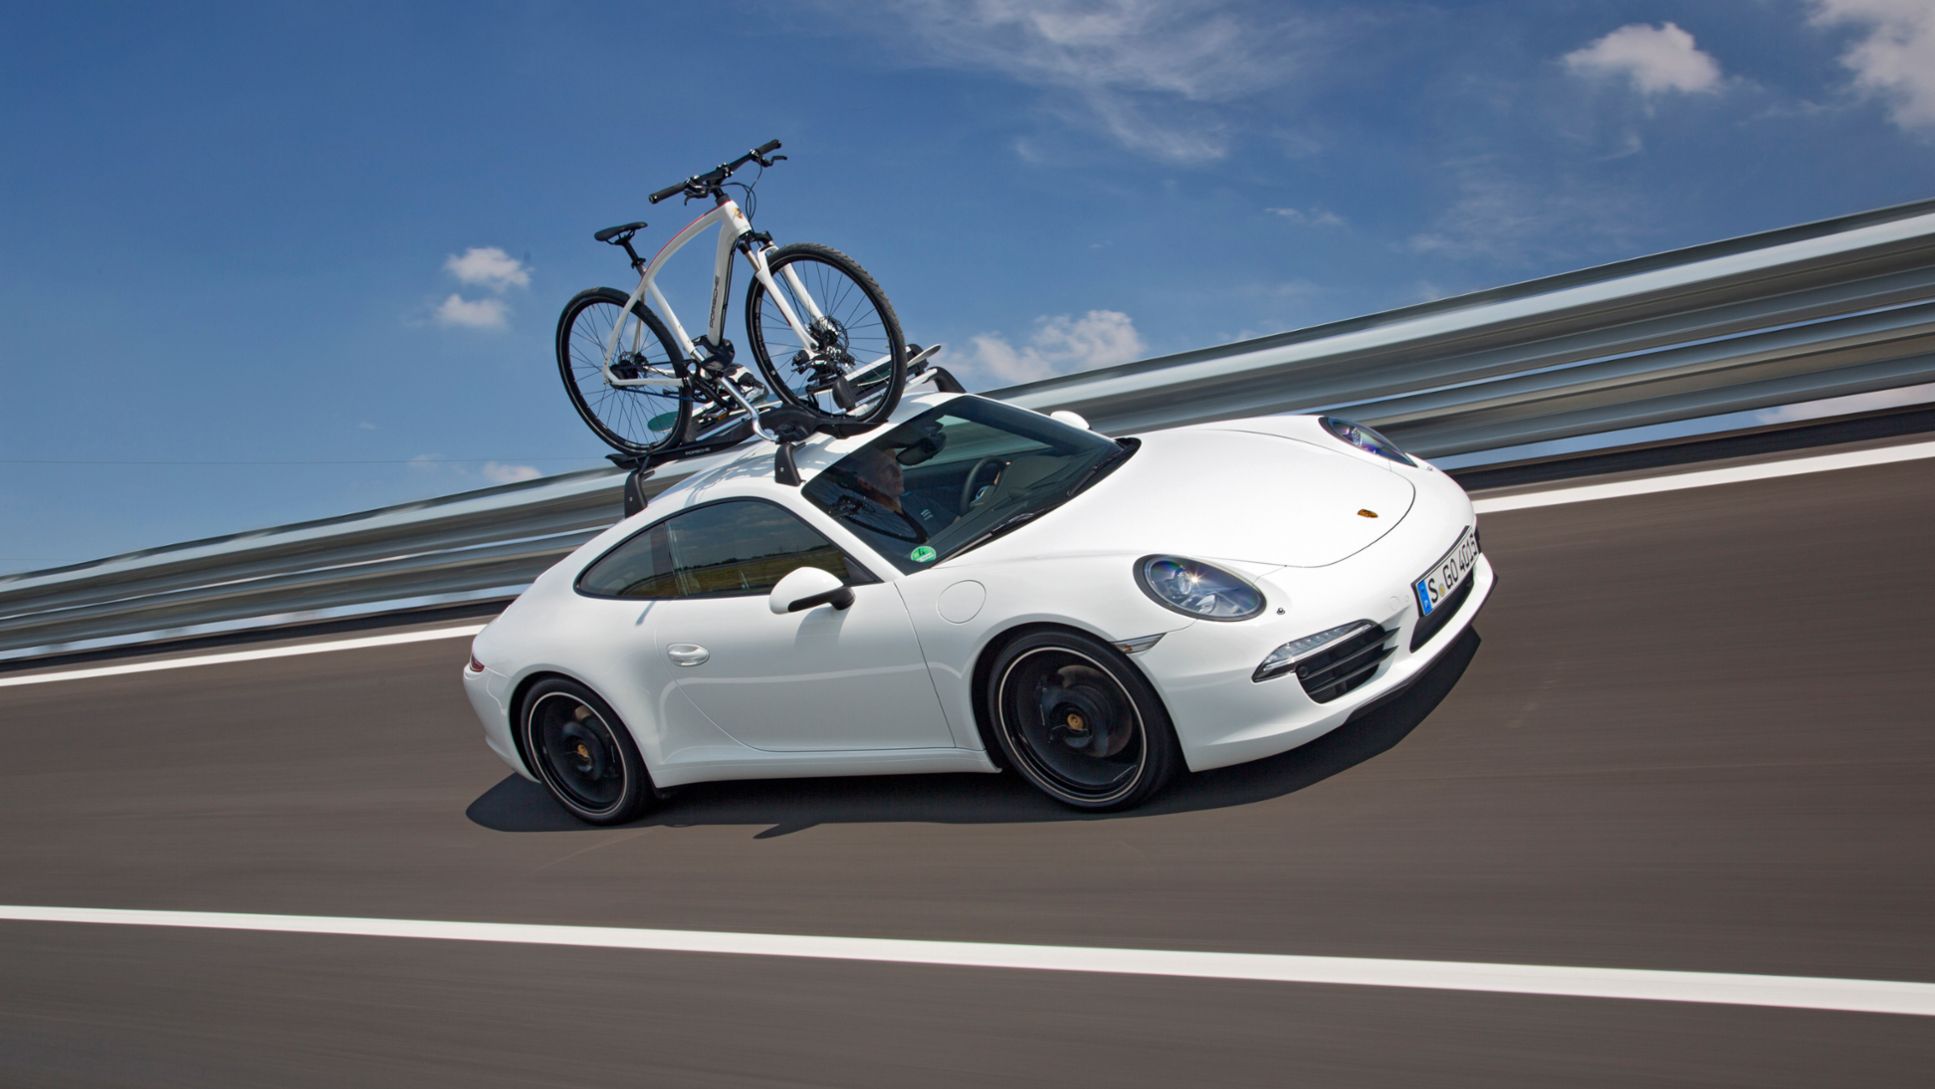 Porsche 911 Carrera S with Porsche Tequipment genuine accessories roof transport system